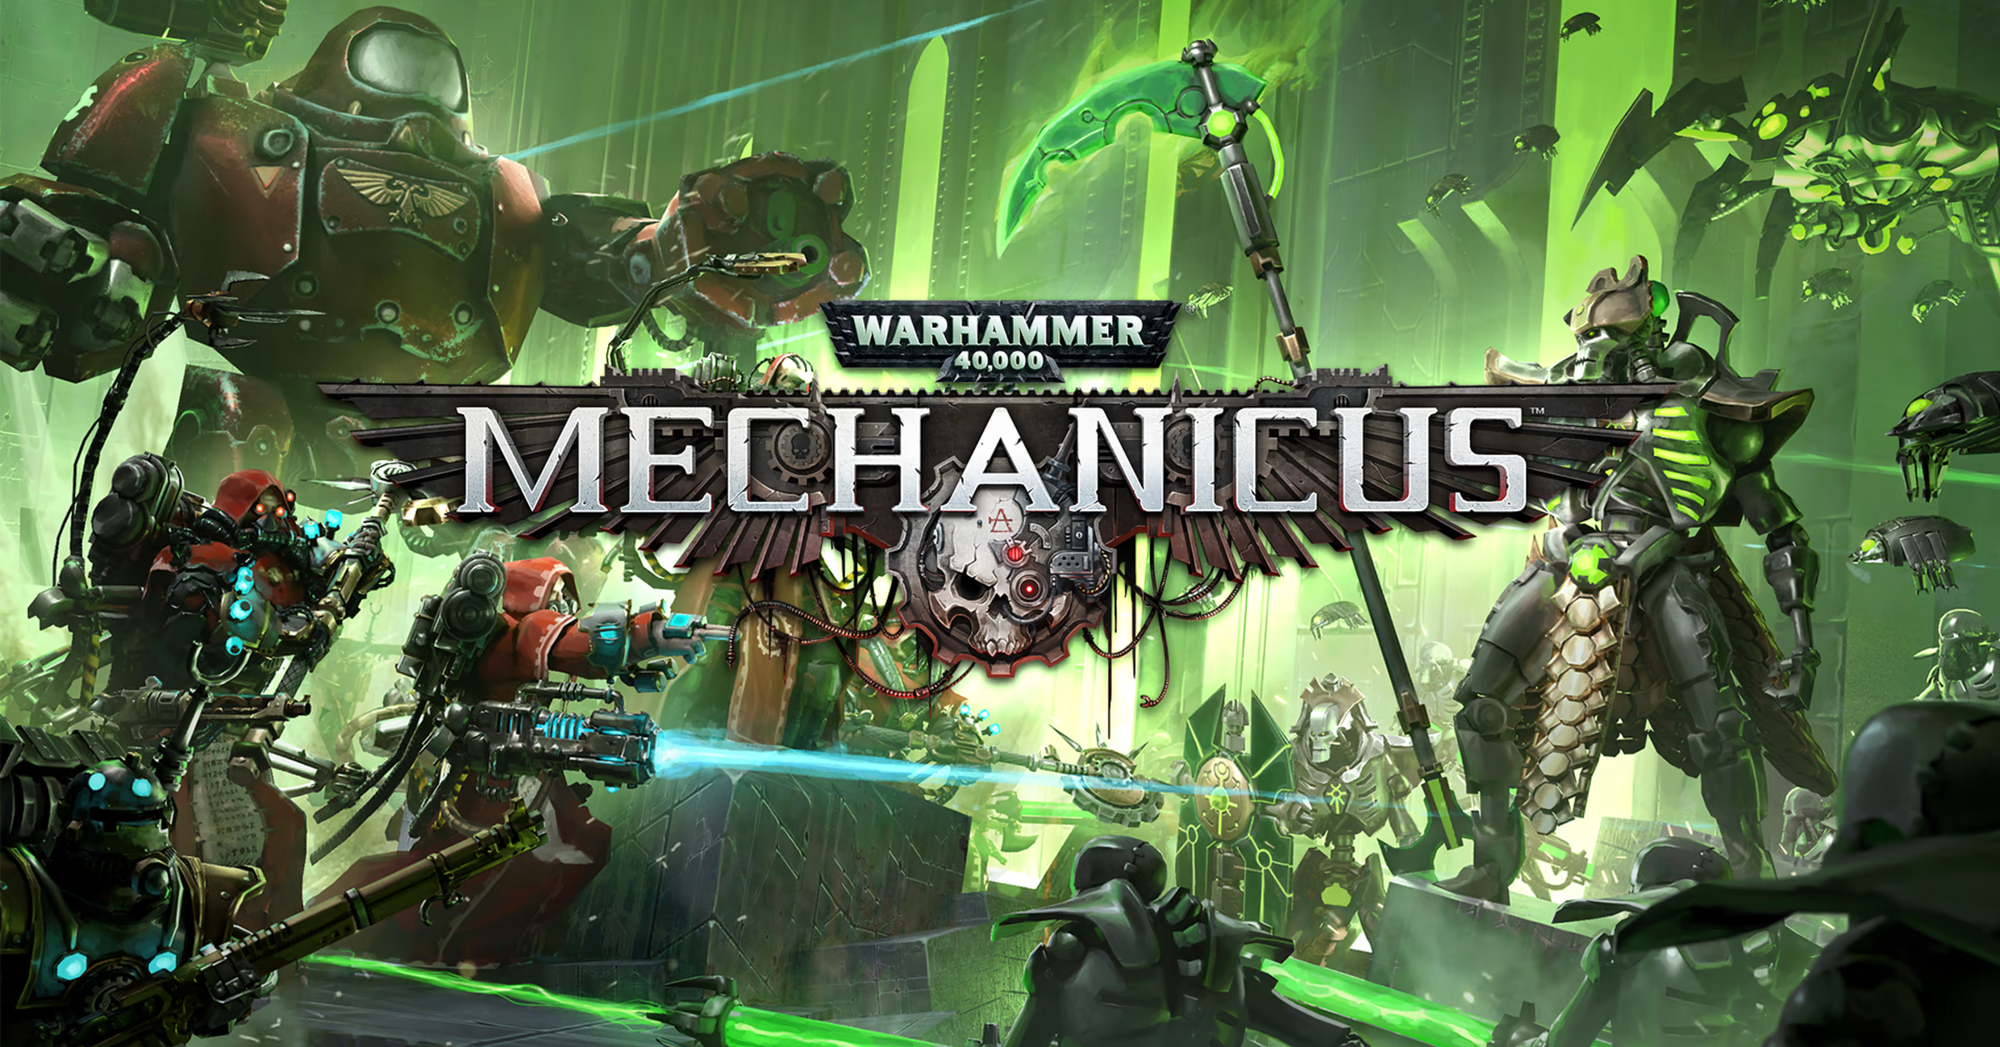 Game chiến thuật Warhammer 40,000: Mechanicus đang phát hành miễn phí